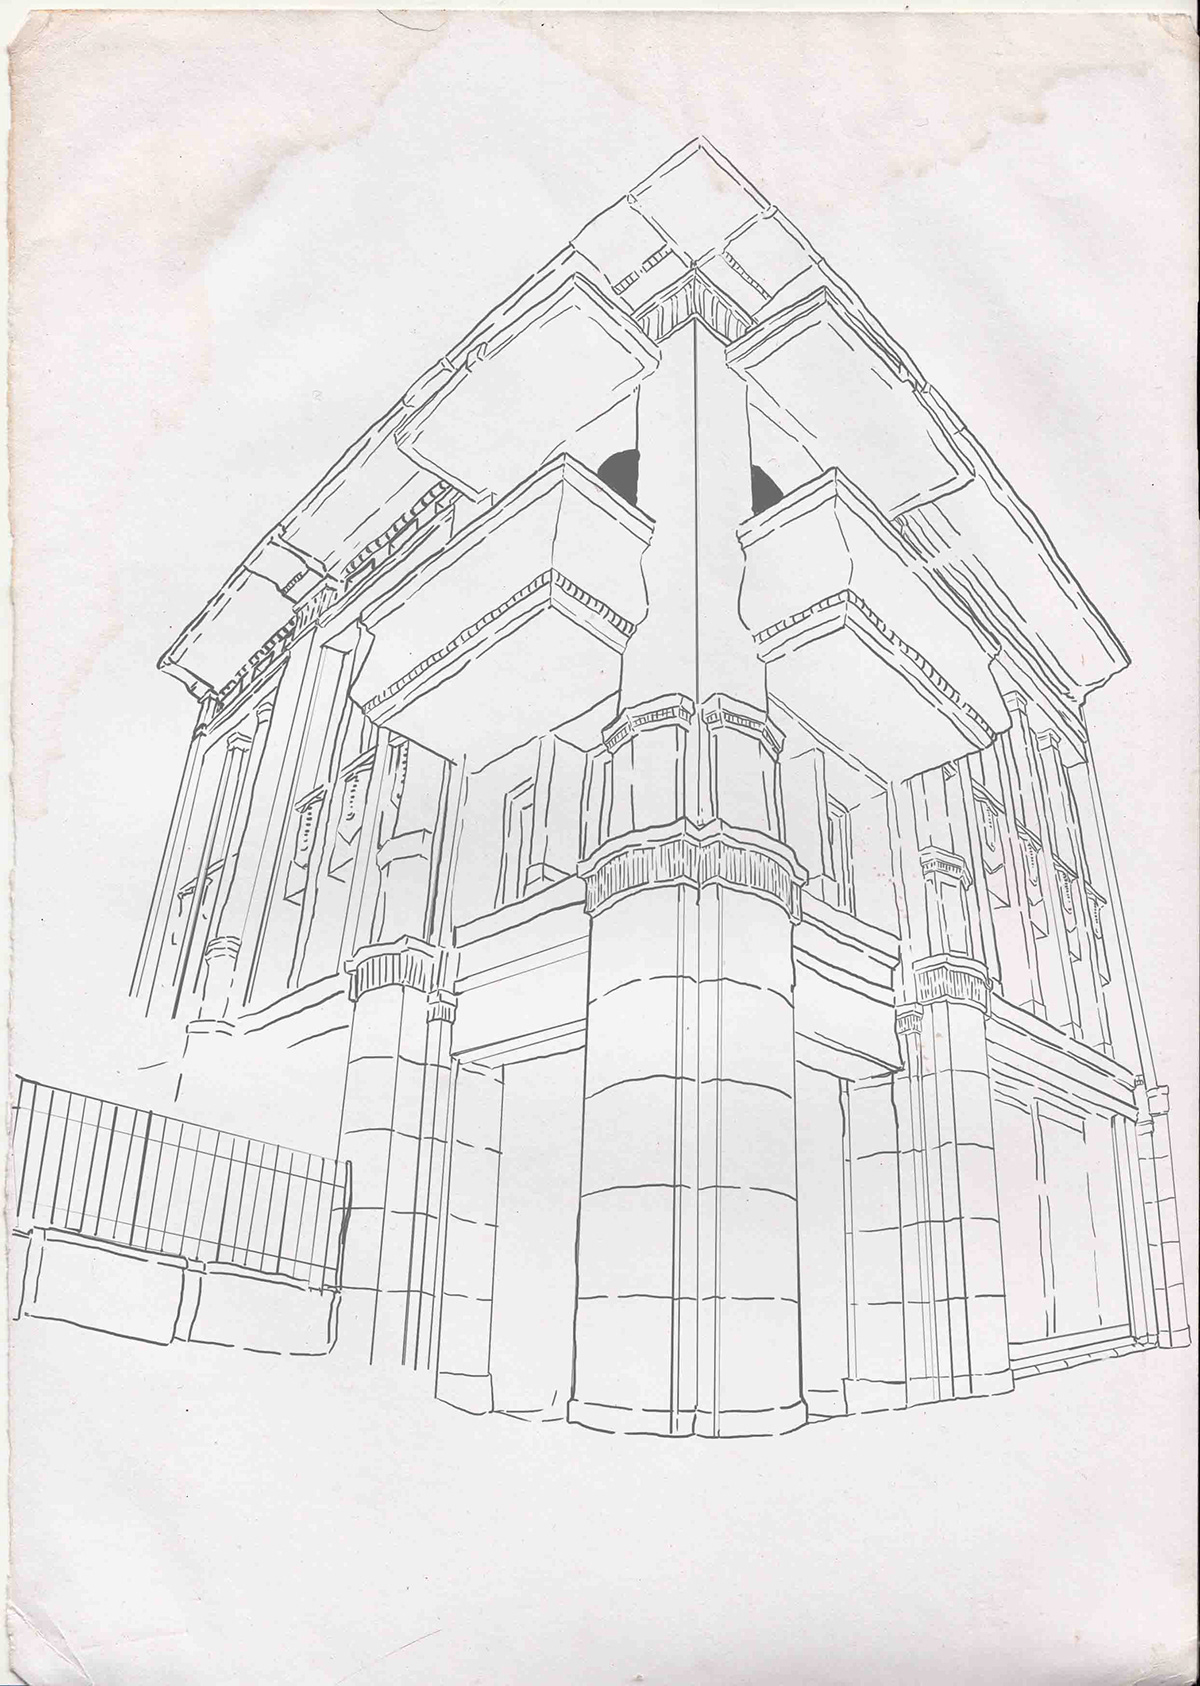 Heritage Building bandung illustrasi Braga